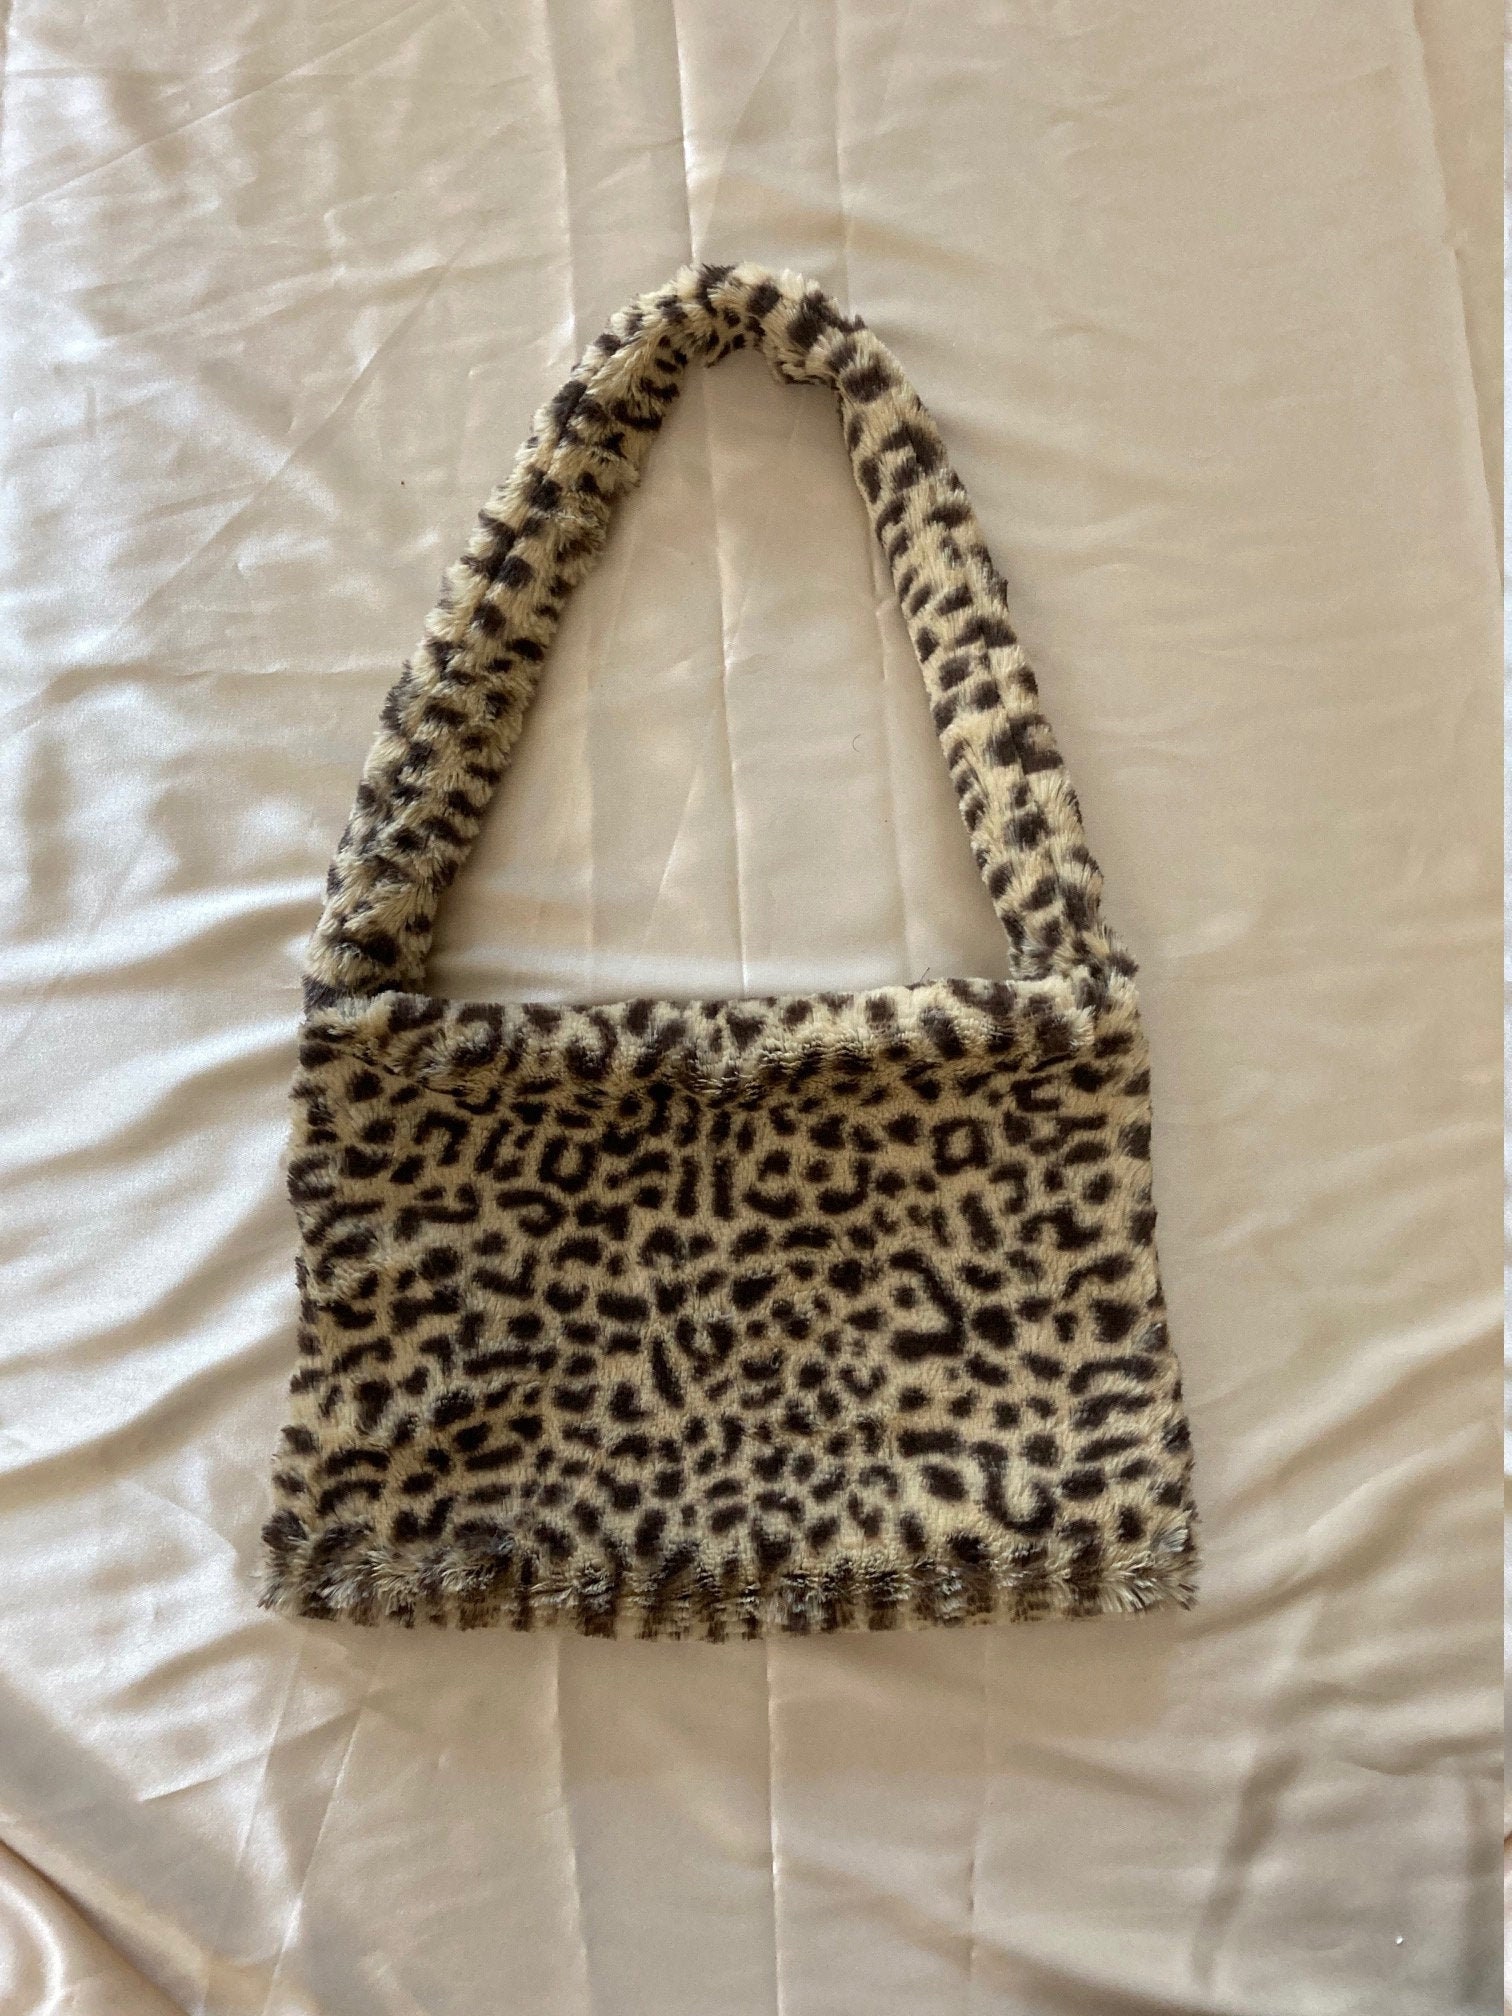 HAWEE Women's Tote Bag Handbags Shoulder Tote Bag Leopard Texture Tote  Fashion Canvas Purses Bag - Walmart.com